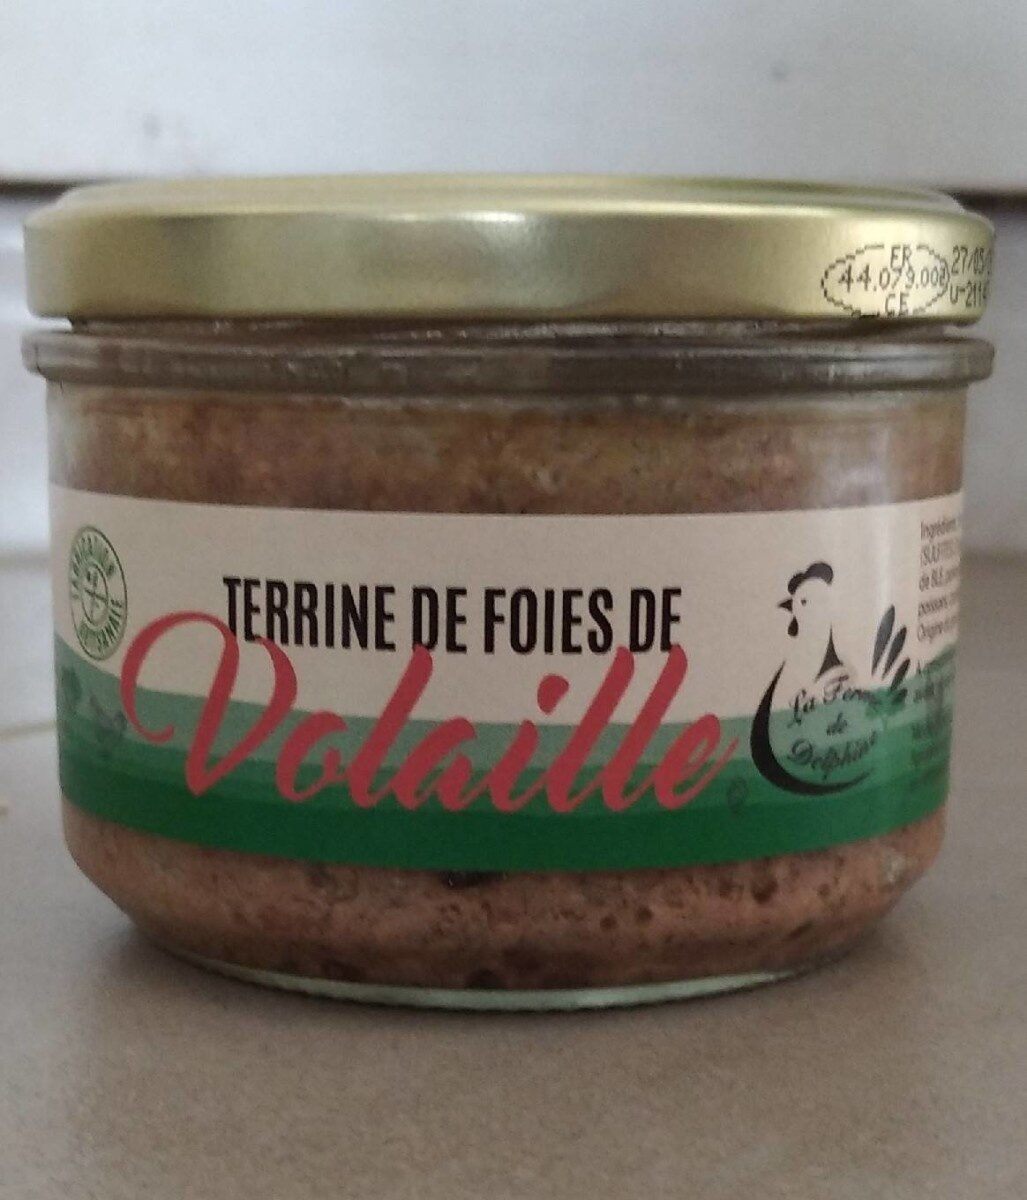 Terrine de foies de volailles - Product - fr